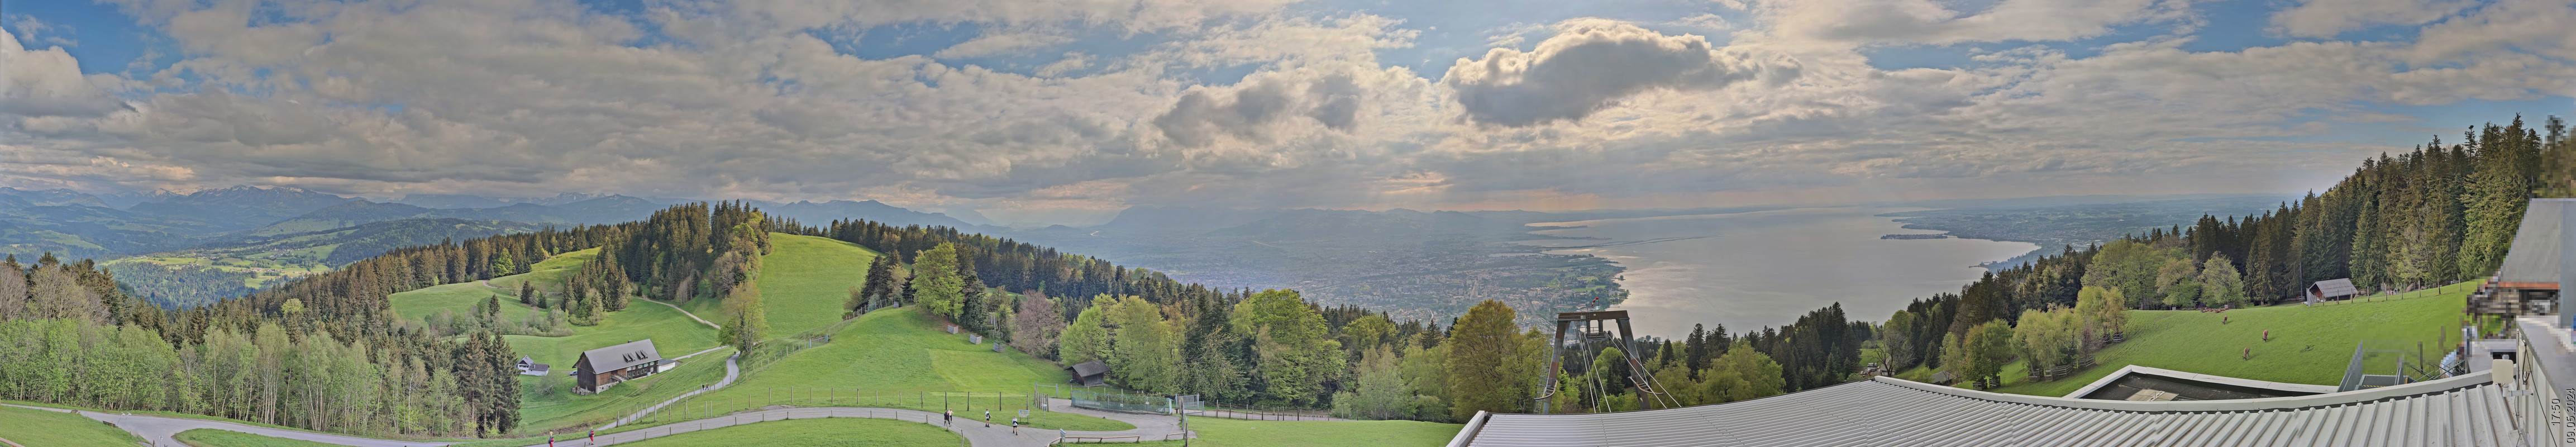 Bregenz Pfänder (View from mountain station)